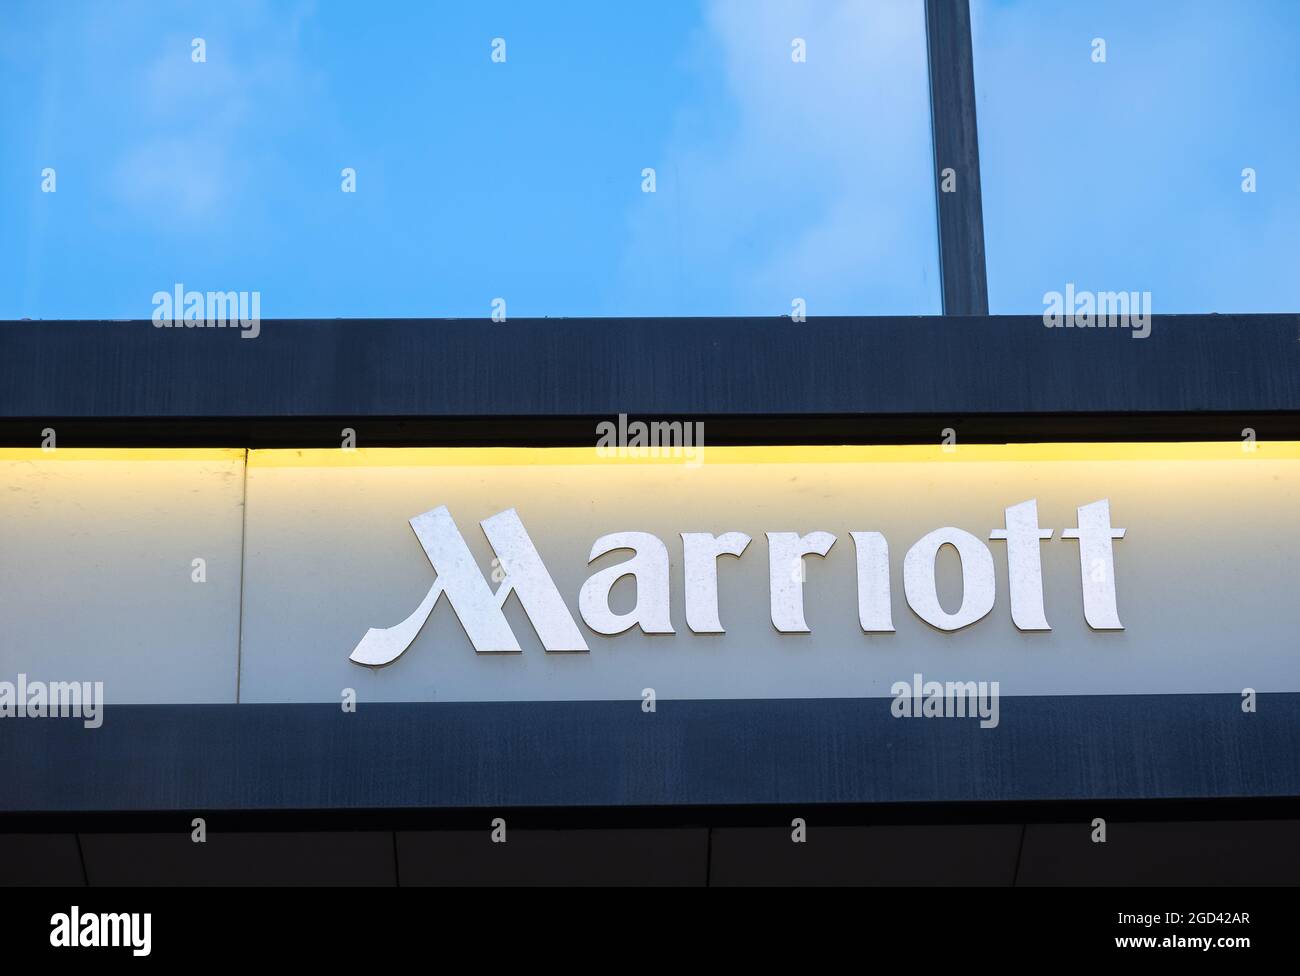 Zürich, Schweiz - 10. Januar 2021: Marriott Hotels Resorts ist die Marke von Marriott International, die Full-Service-Hotels und -Resorts bietet Stockfoto